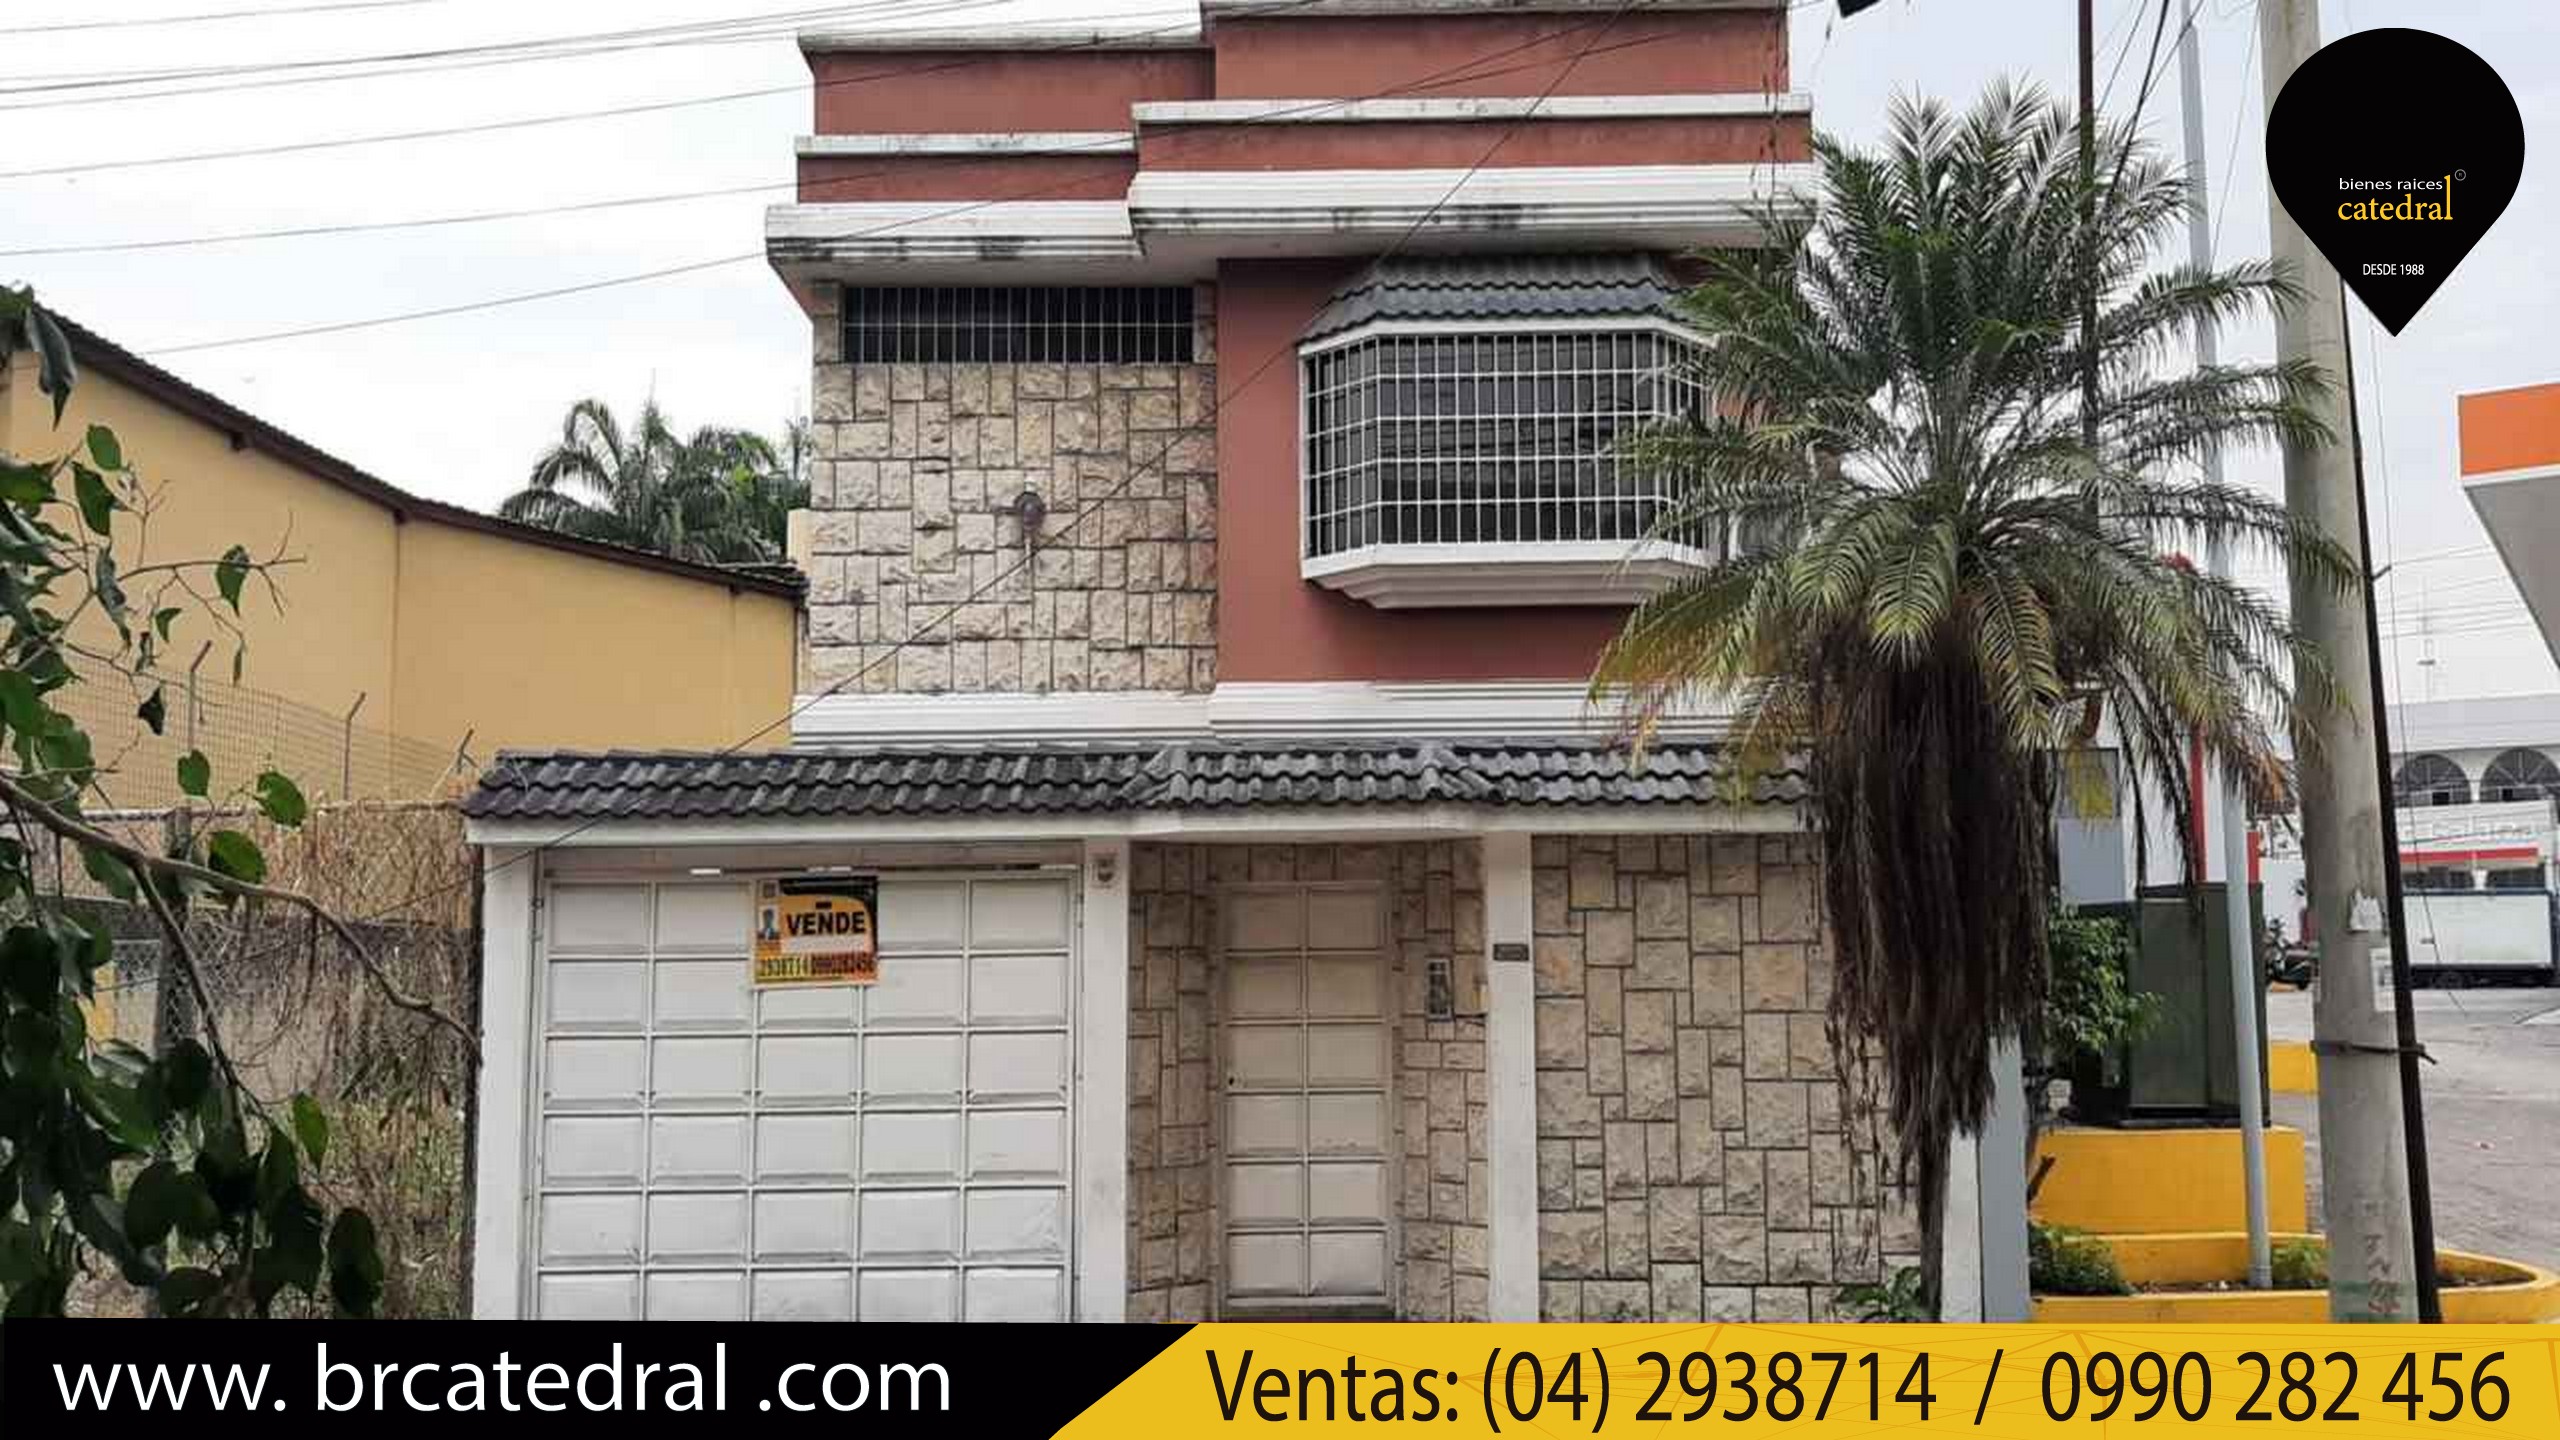 Villa Casa de Venta en Cuenca Ecuador sector Urdenor - Av Juan Tanca Marengo